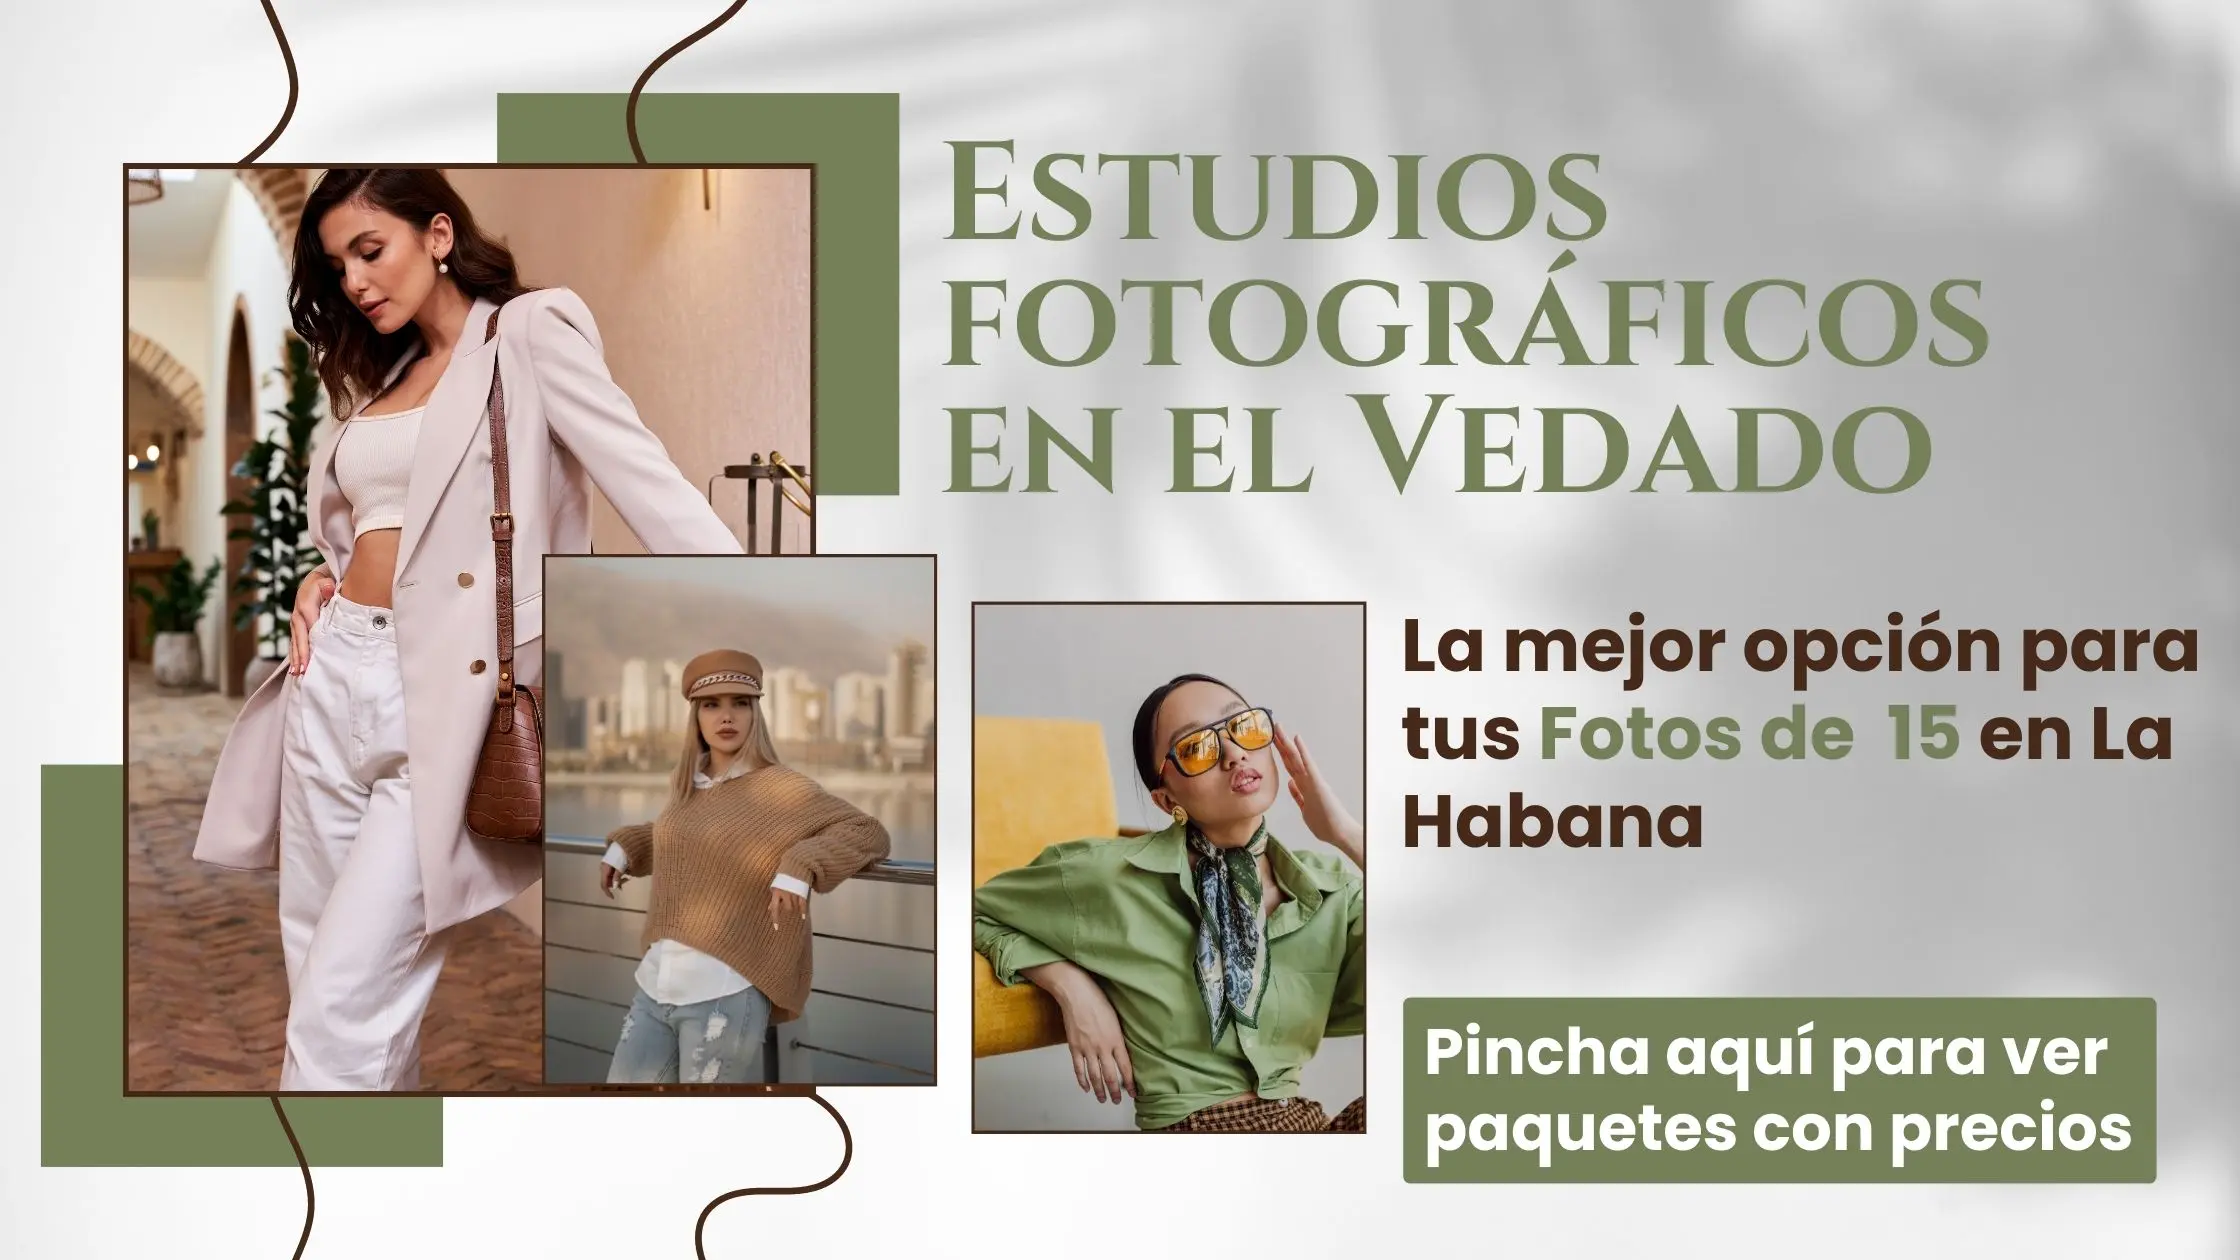 Estudios fotograficos en el Vedado (fotos de 15 en el Vedado)